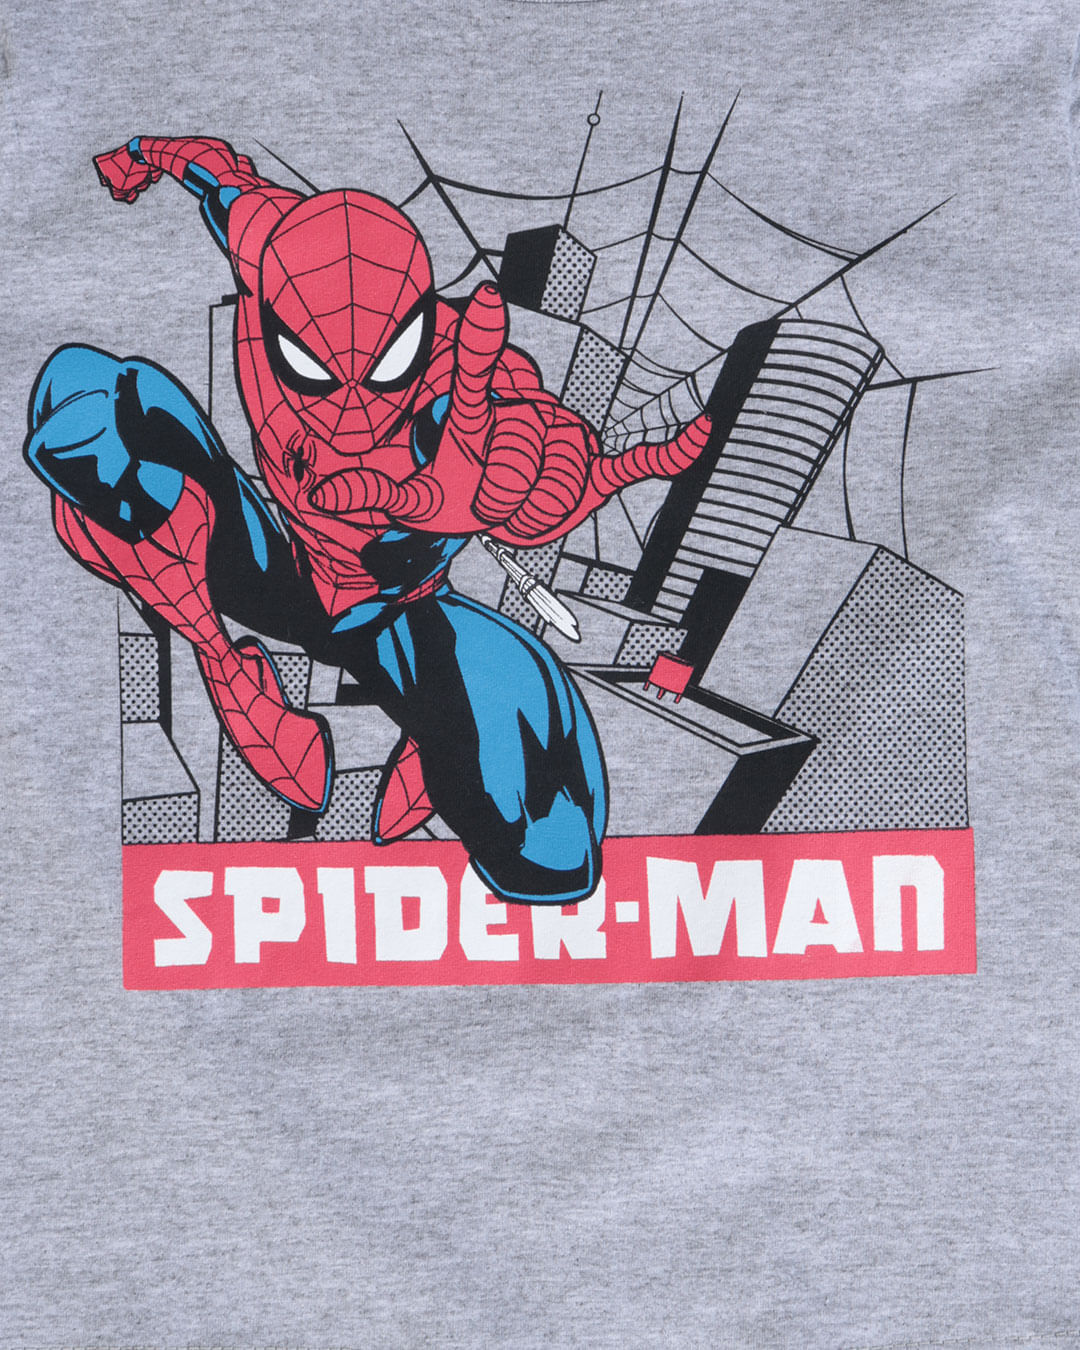 Camiseta-Bebe-Manga-Curta--Homem-Aranha-Marvel-Cinza